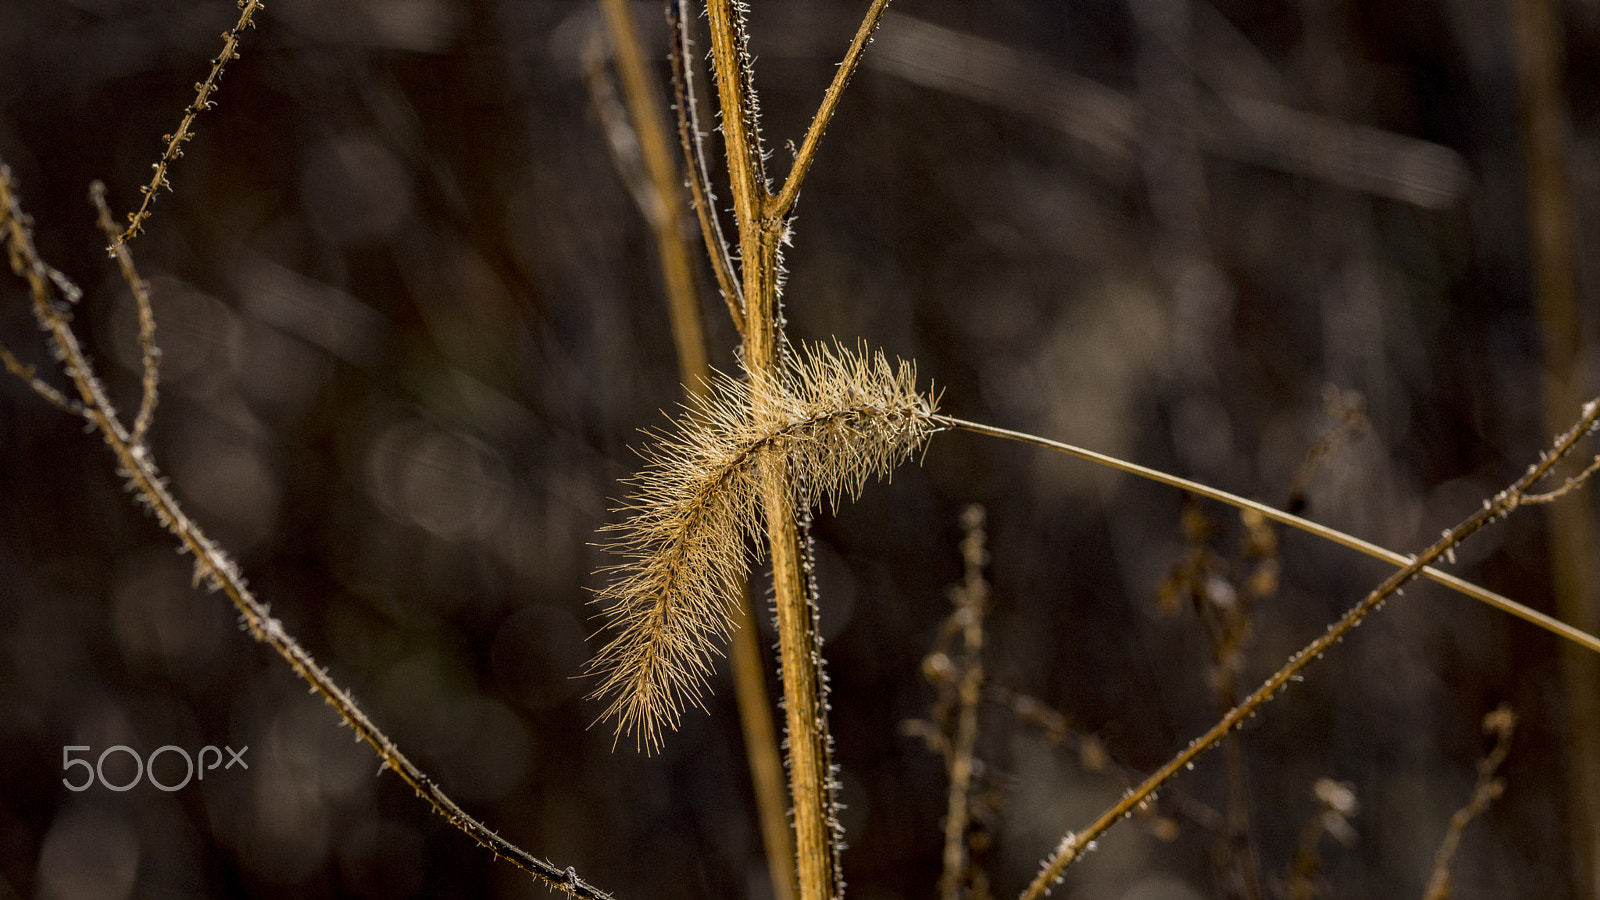 Sony SLT-A65 (SLT-A65V) sample photo. Marshland grass photography